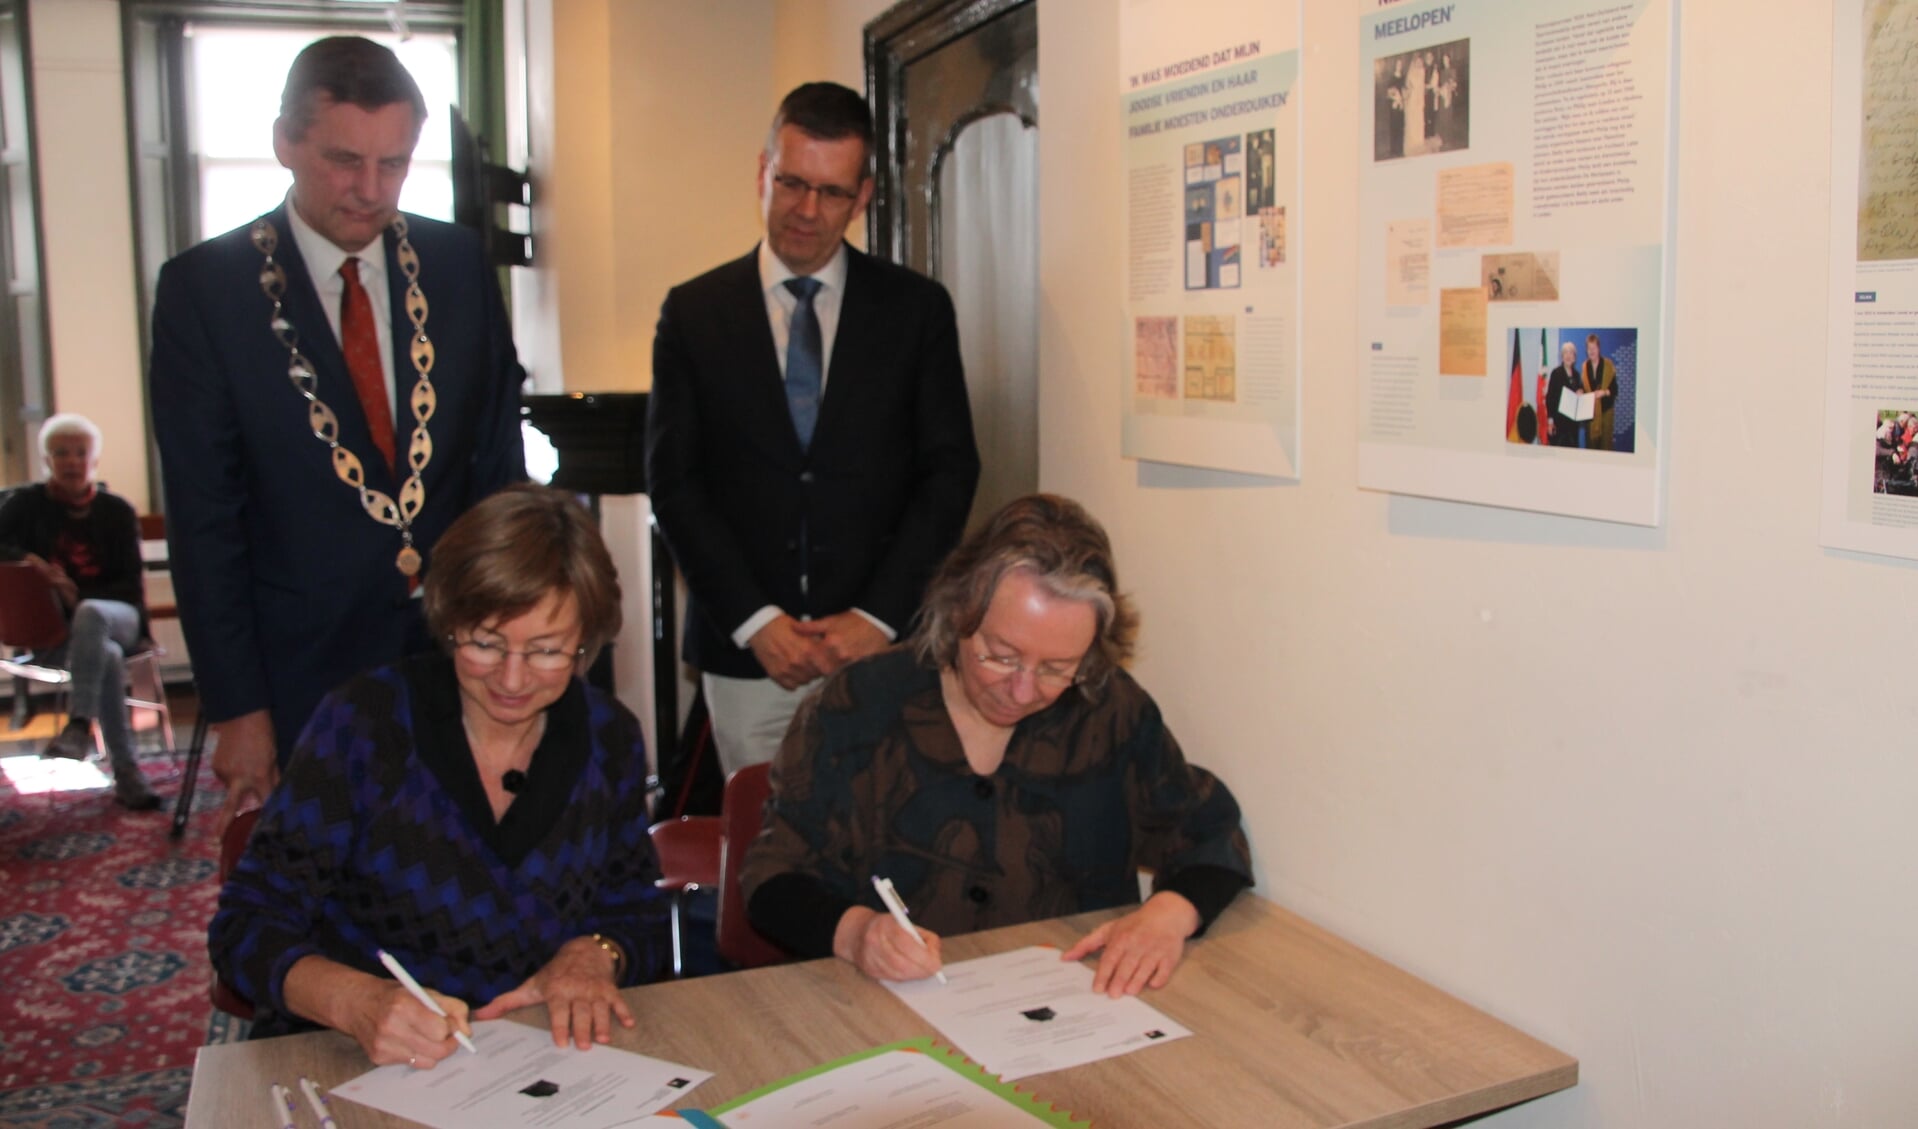 De ondertekening van de overdracht door Gerda Brethouwer en Claire Vaessen (rechts). Burgemeester Anton Stapelkamp en loco-burgemeester Joost Reus (staand rechts) kijken toe. Foto: Lydia ter Welle